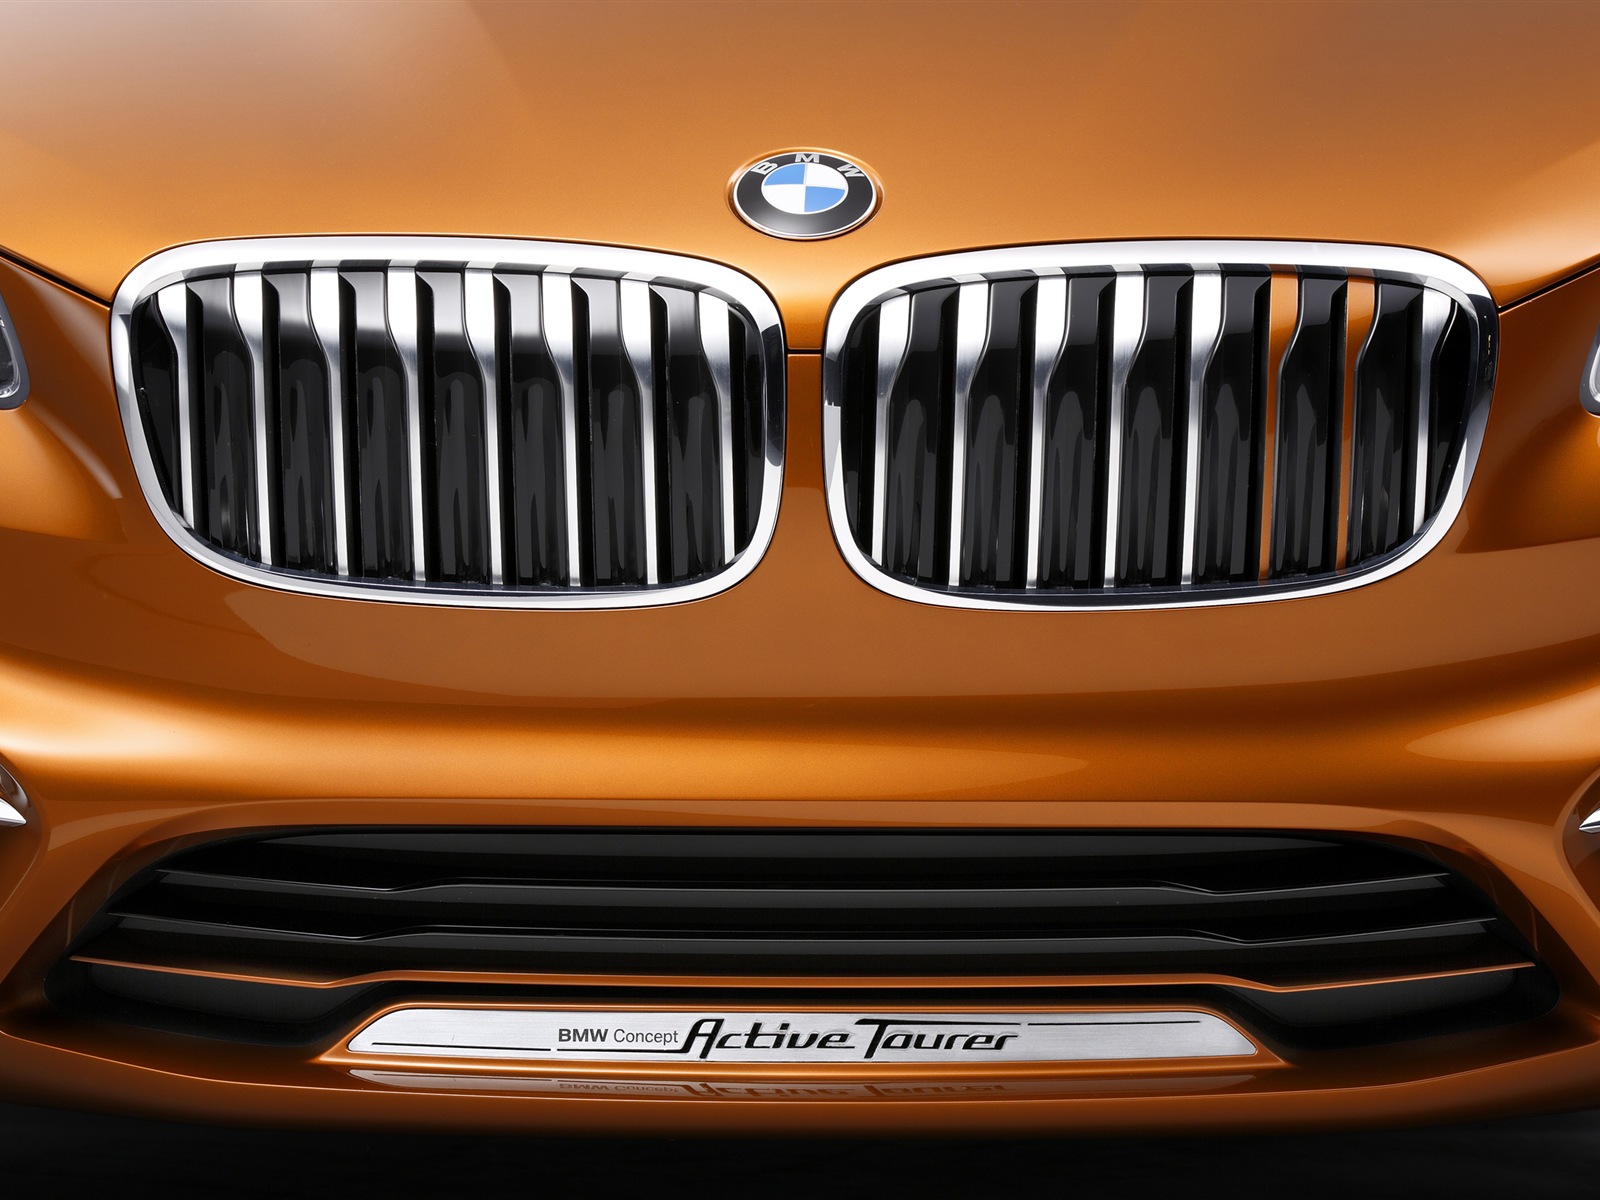 2013 BMW Concept activos Tourer fondos de pantalla de alta definición #15 - 1600x1200